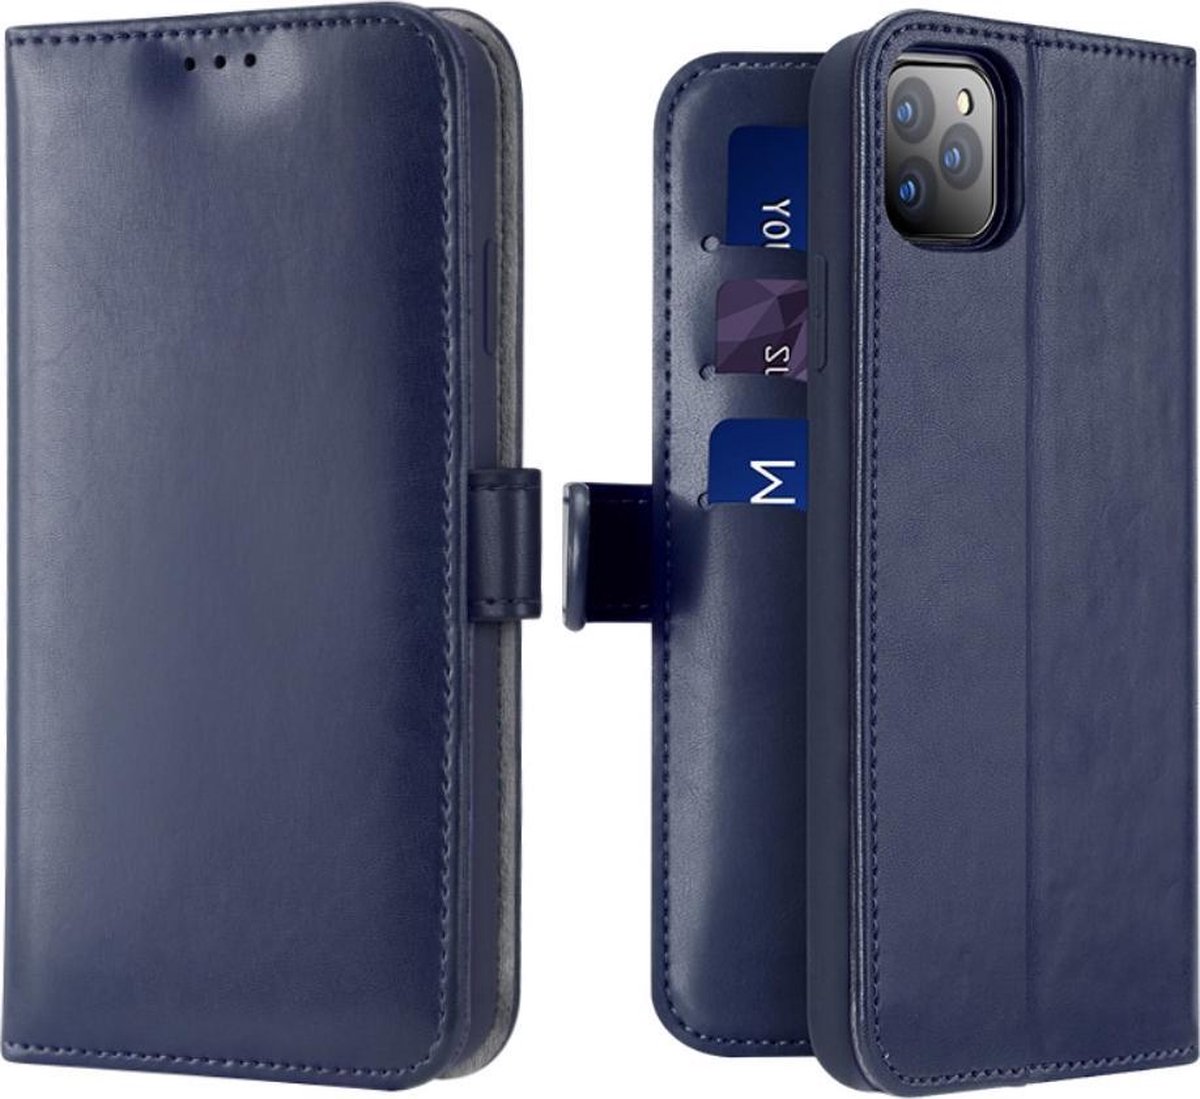 Lederen Wallet Case voor iPhone 11 Pro Max 6.5 inch- Blauw - Dux Ducis